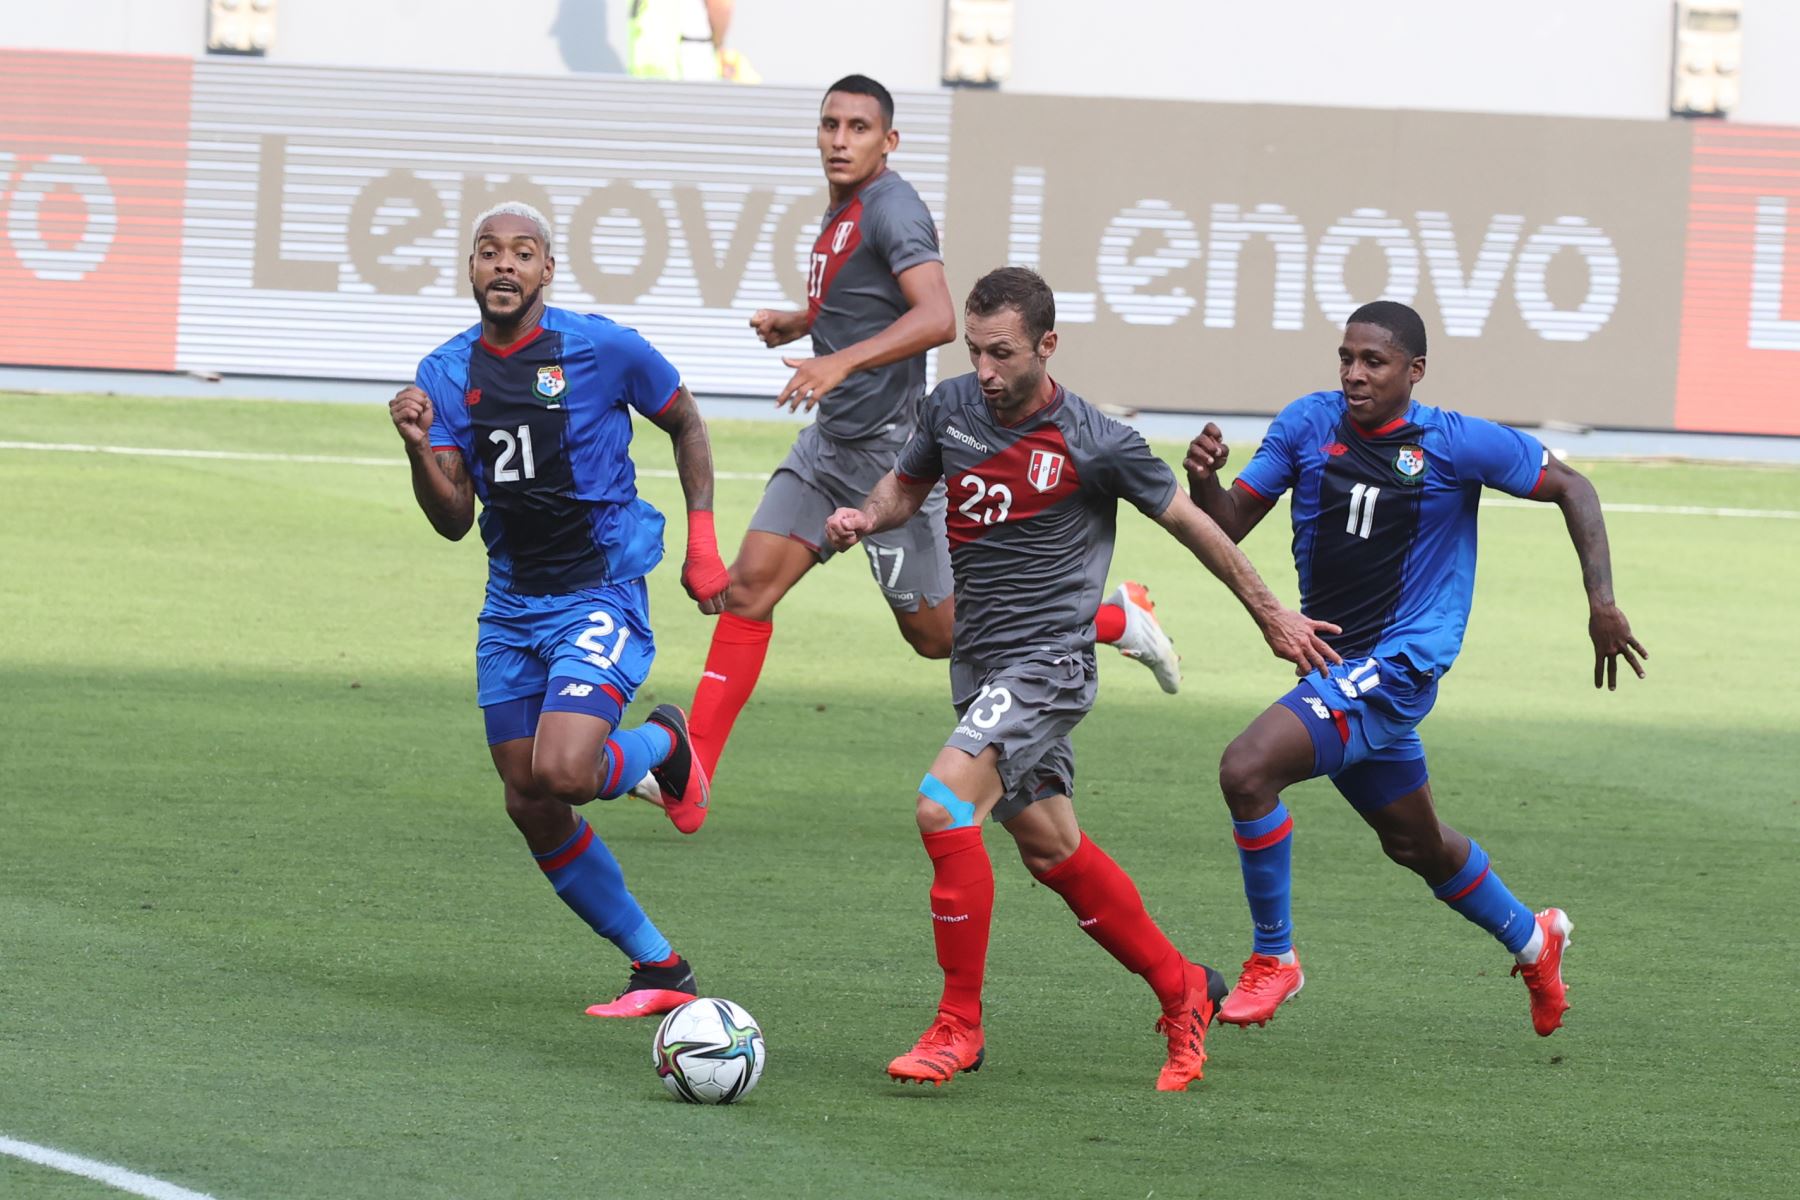 La selección peruana enfrenta a la selección de Panamá en un partido amistoso de preparación antes de enfrentar a Colombia por las eliminatorias a Catar 2022. Foto: ANDINA/Vidal Tarqui